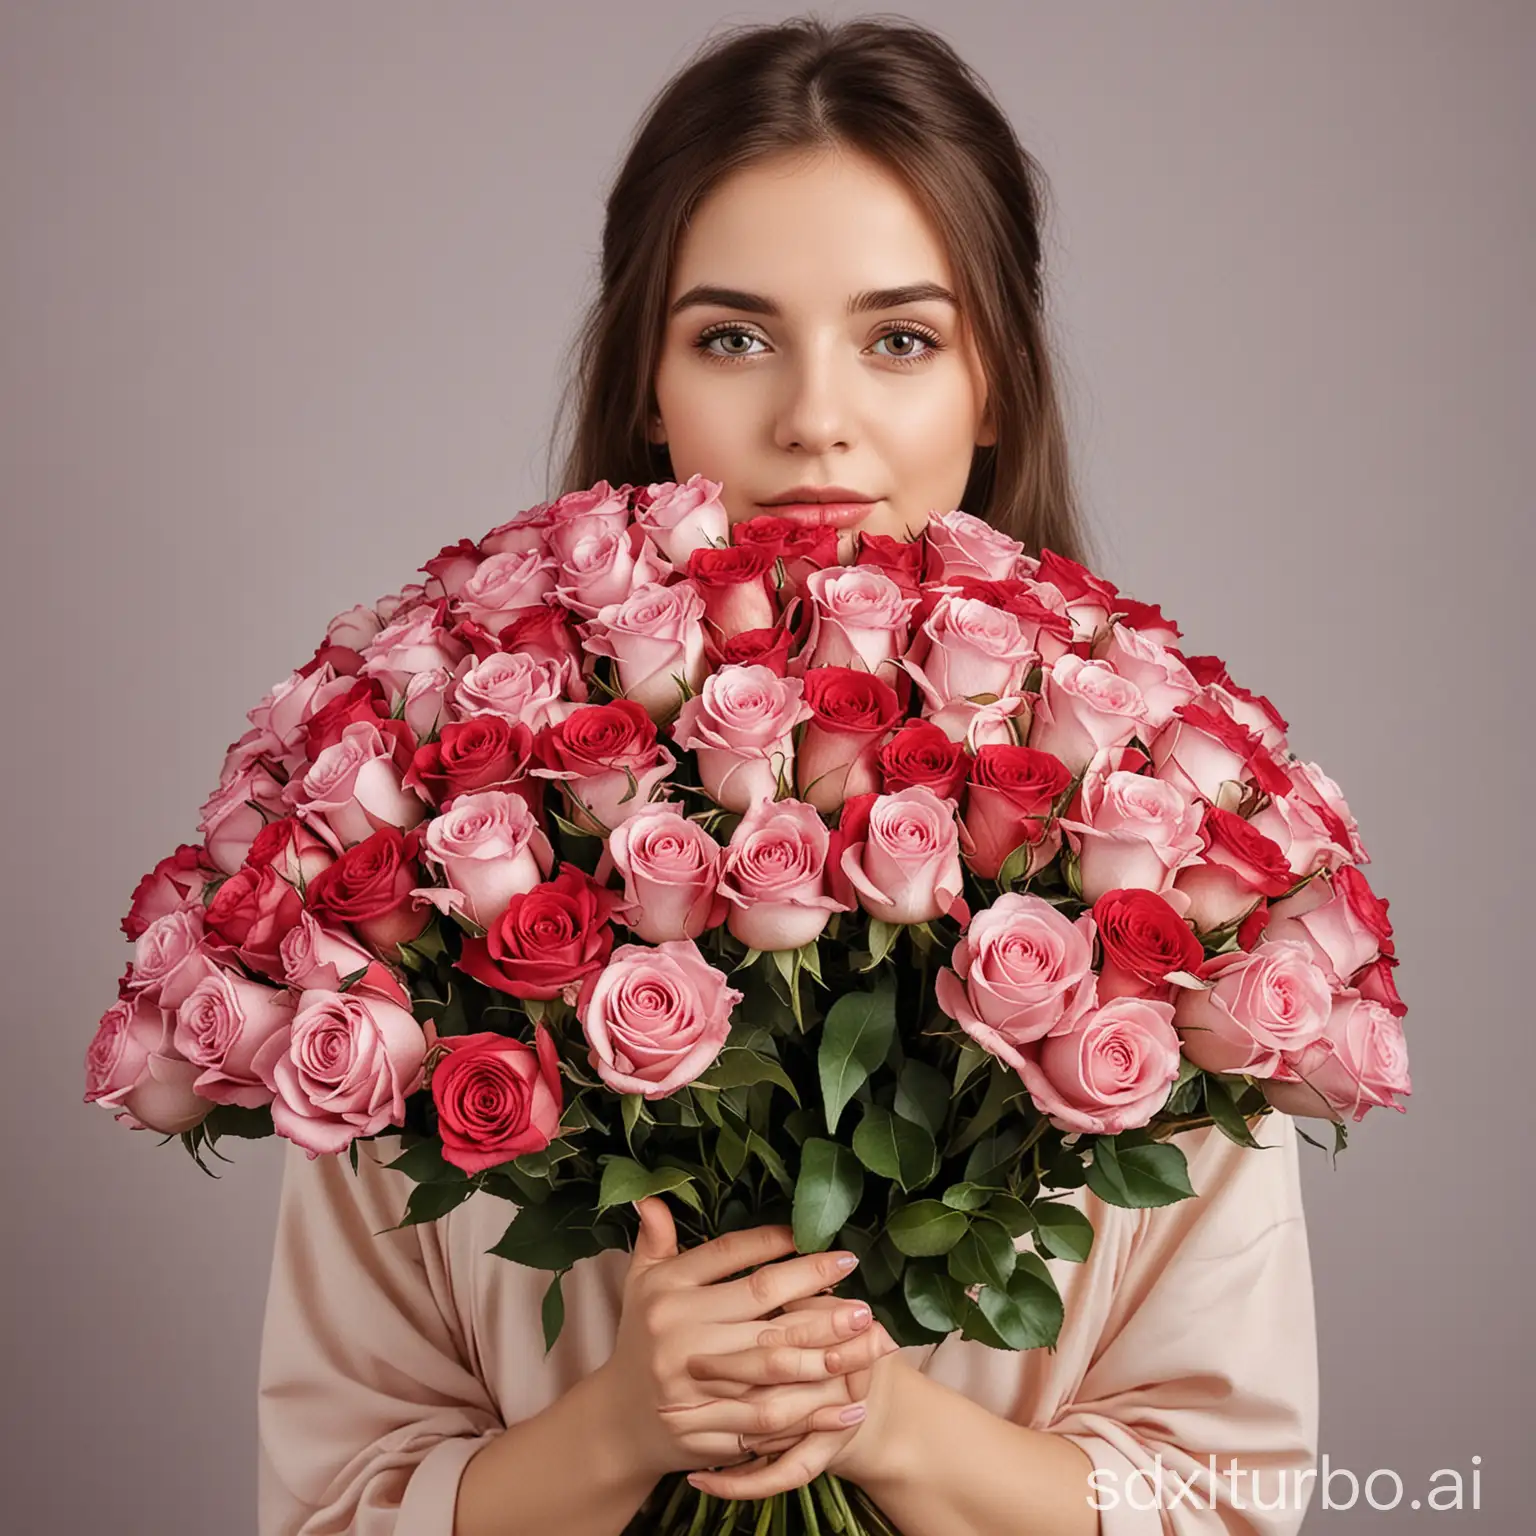 девушка держит большой  букет  роз, закрывая лицо розами